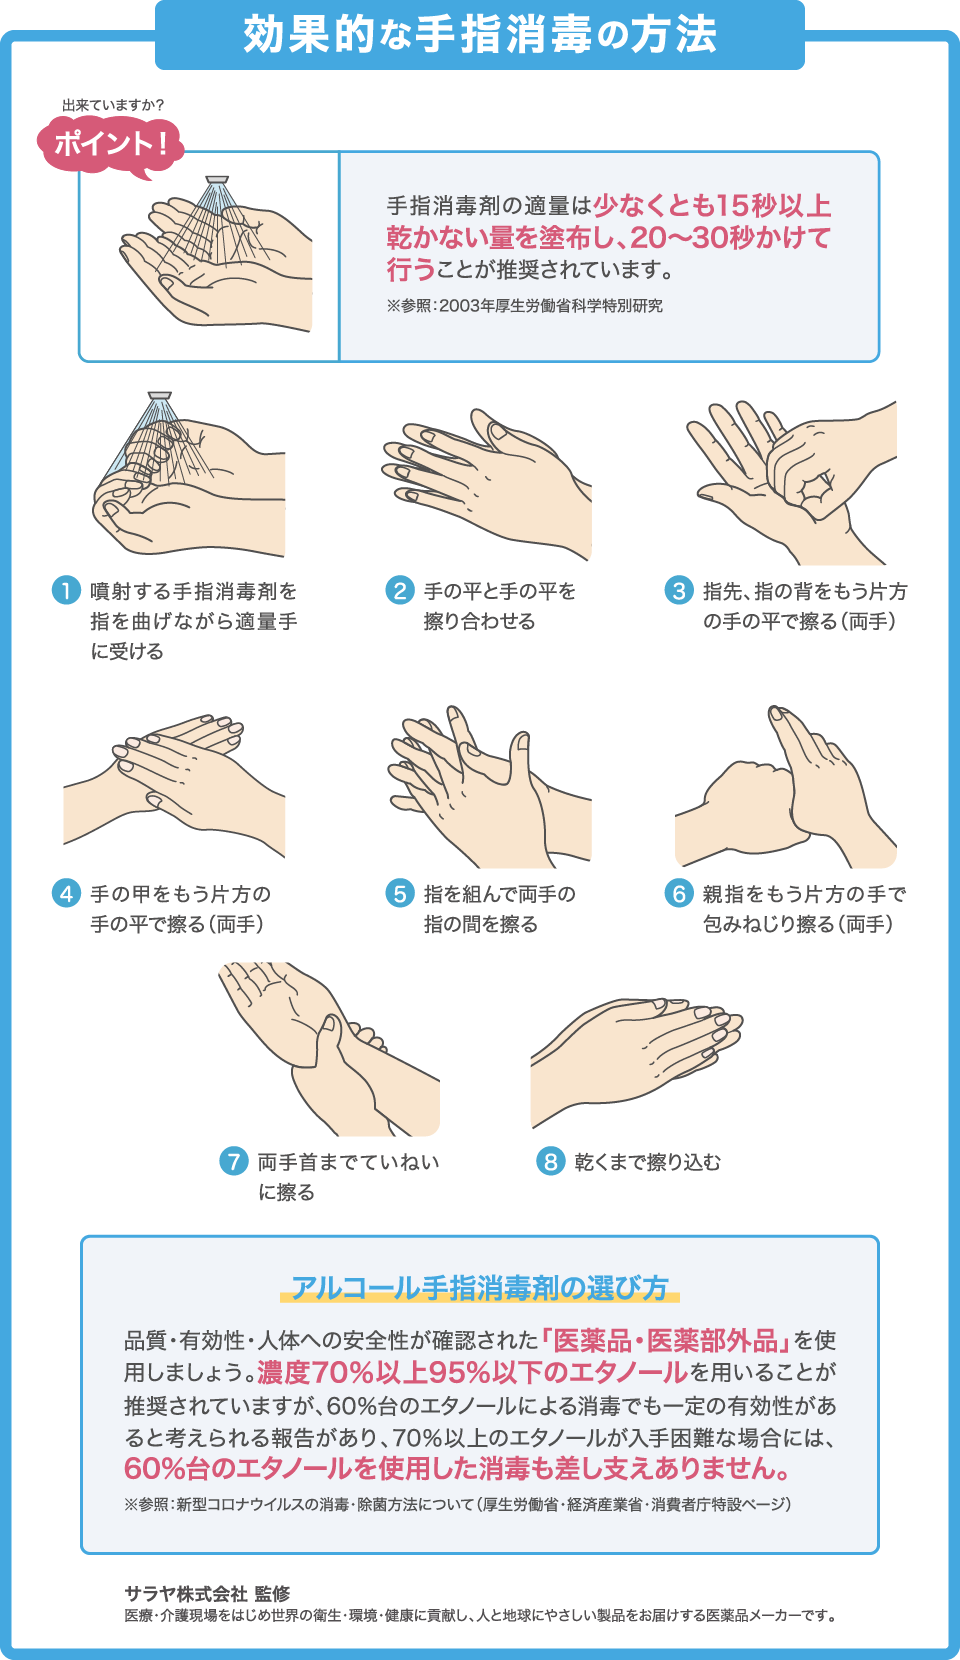 効果的な手指消毒の方法 出来ていますか？ ポイント！ 手指消毒剤の適量は少なくとも15秒以上乾かない量を塗布し、20〜30秒かけて行うことが推奨されています。 ※参照：2003年厚生労働省科学特別研究 ①噴射する手指消毒剤を指を曲げながら適量手に受ける ②手の平と手の平を擦り合わせる ③指先、指の背をもう片方の手の平で擦る（両手） ④手の甲をもう片方の手の平で擦る（両手） ⑤指を組んで両手の指の間を擦る ⑥親指をもう片方の手で包みねじり擦る（両手） ⑦両手首までていねいに擦る ⑧乾くまで擦り込む アルコール手指消毒剤の選び方 品質・有効性・人体への安全性が確認された「医薬品・医薬部外品」を使用しましょう。濃度70%以上95%以下のエタノールを用いることが推奨されていますが、60%台のエタノールによる消毒でも一定の有効性があると考えられる報告があり、70%以上のエタノールが入手困難な場合には、60%台のエタノールを使用した消毒も差し支えありません。 ※参照：新型コロナウイルスの消毒・除菌方法について（厚生労働省・経済産業省・消費者庁特設ページ） サラヤ株式会社監修 医療・介護現場をはじめ世界の衛生・環境・健康に貢献し、人と地球にやさしい製品をお届けする医薬品メーカーです。